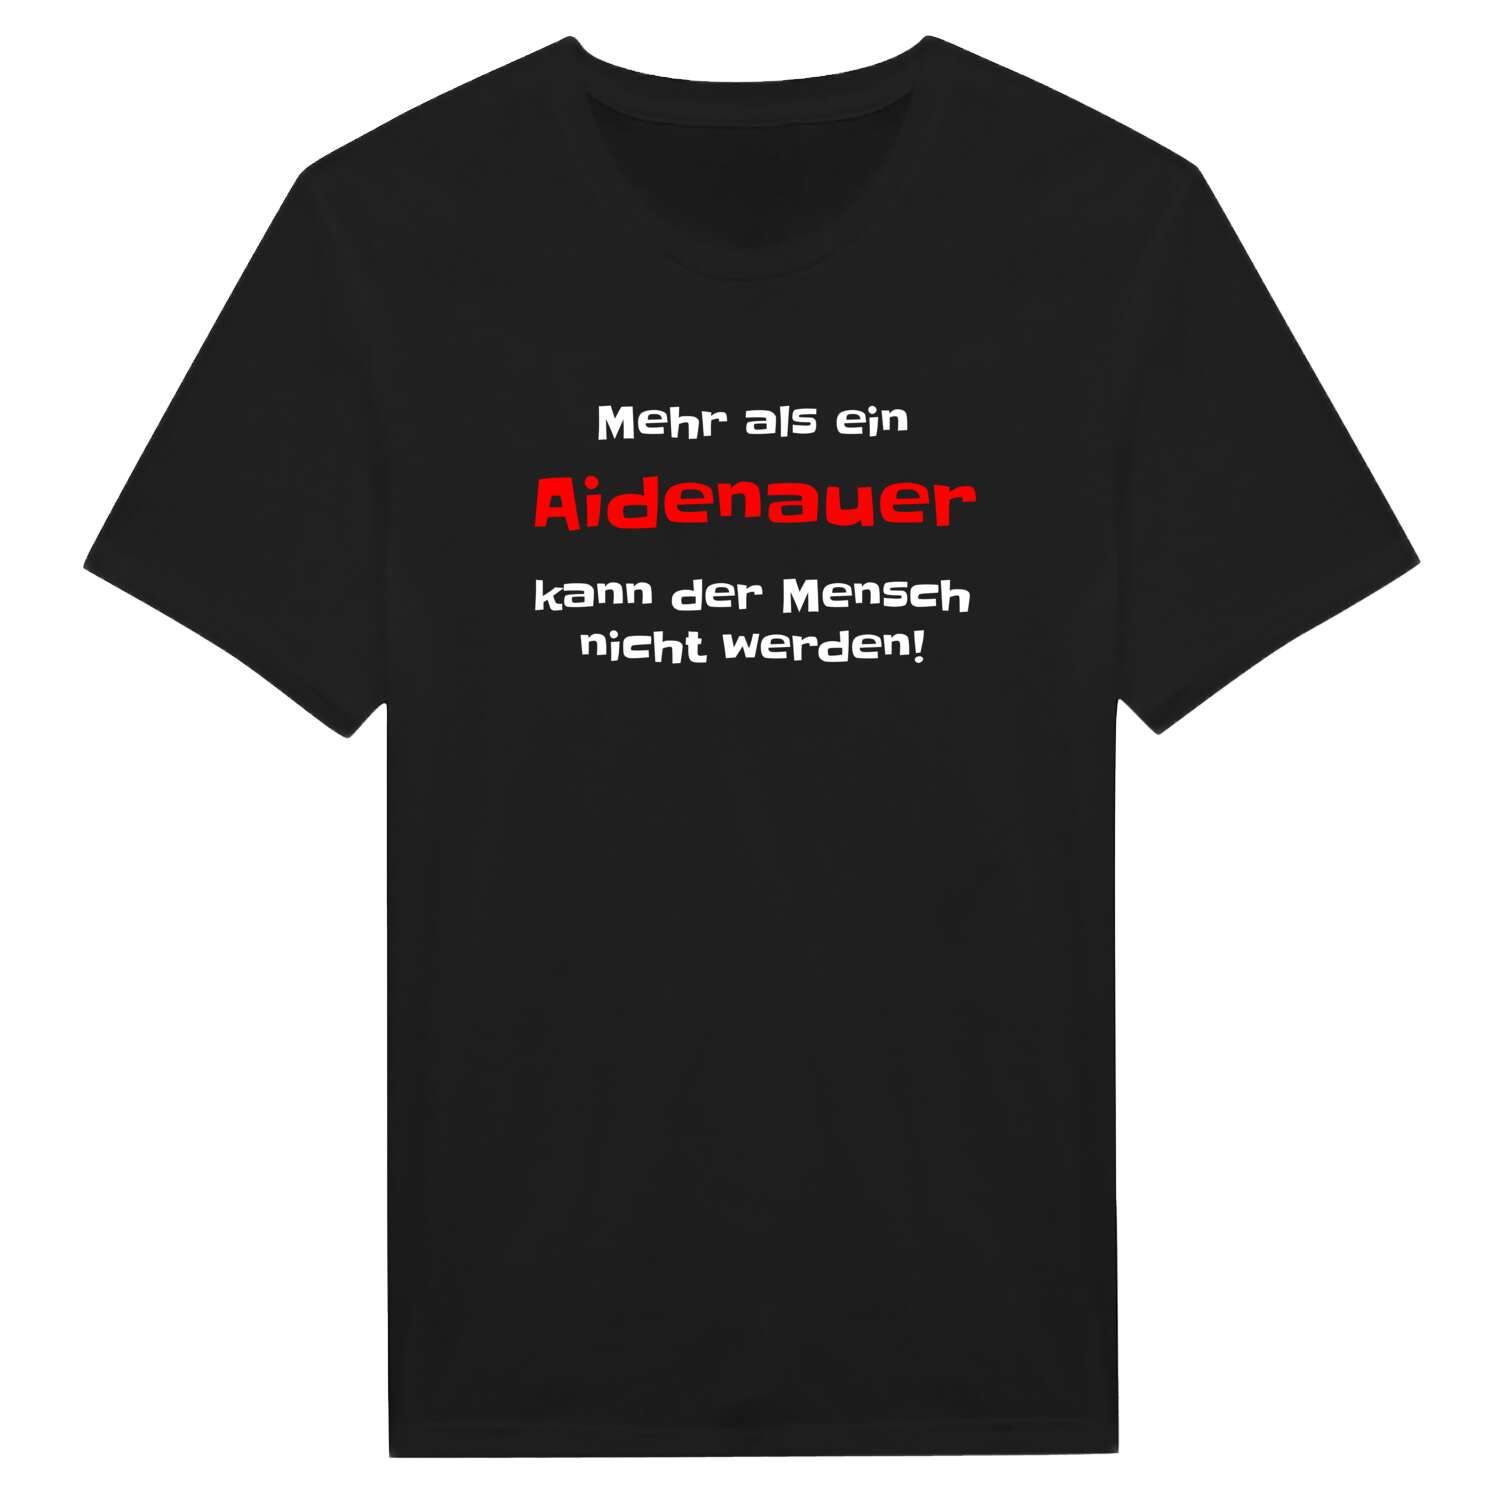 Aidenau T-Shirt »Mehr als ein«